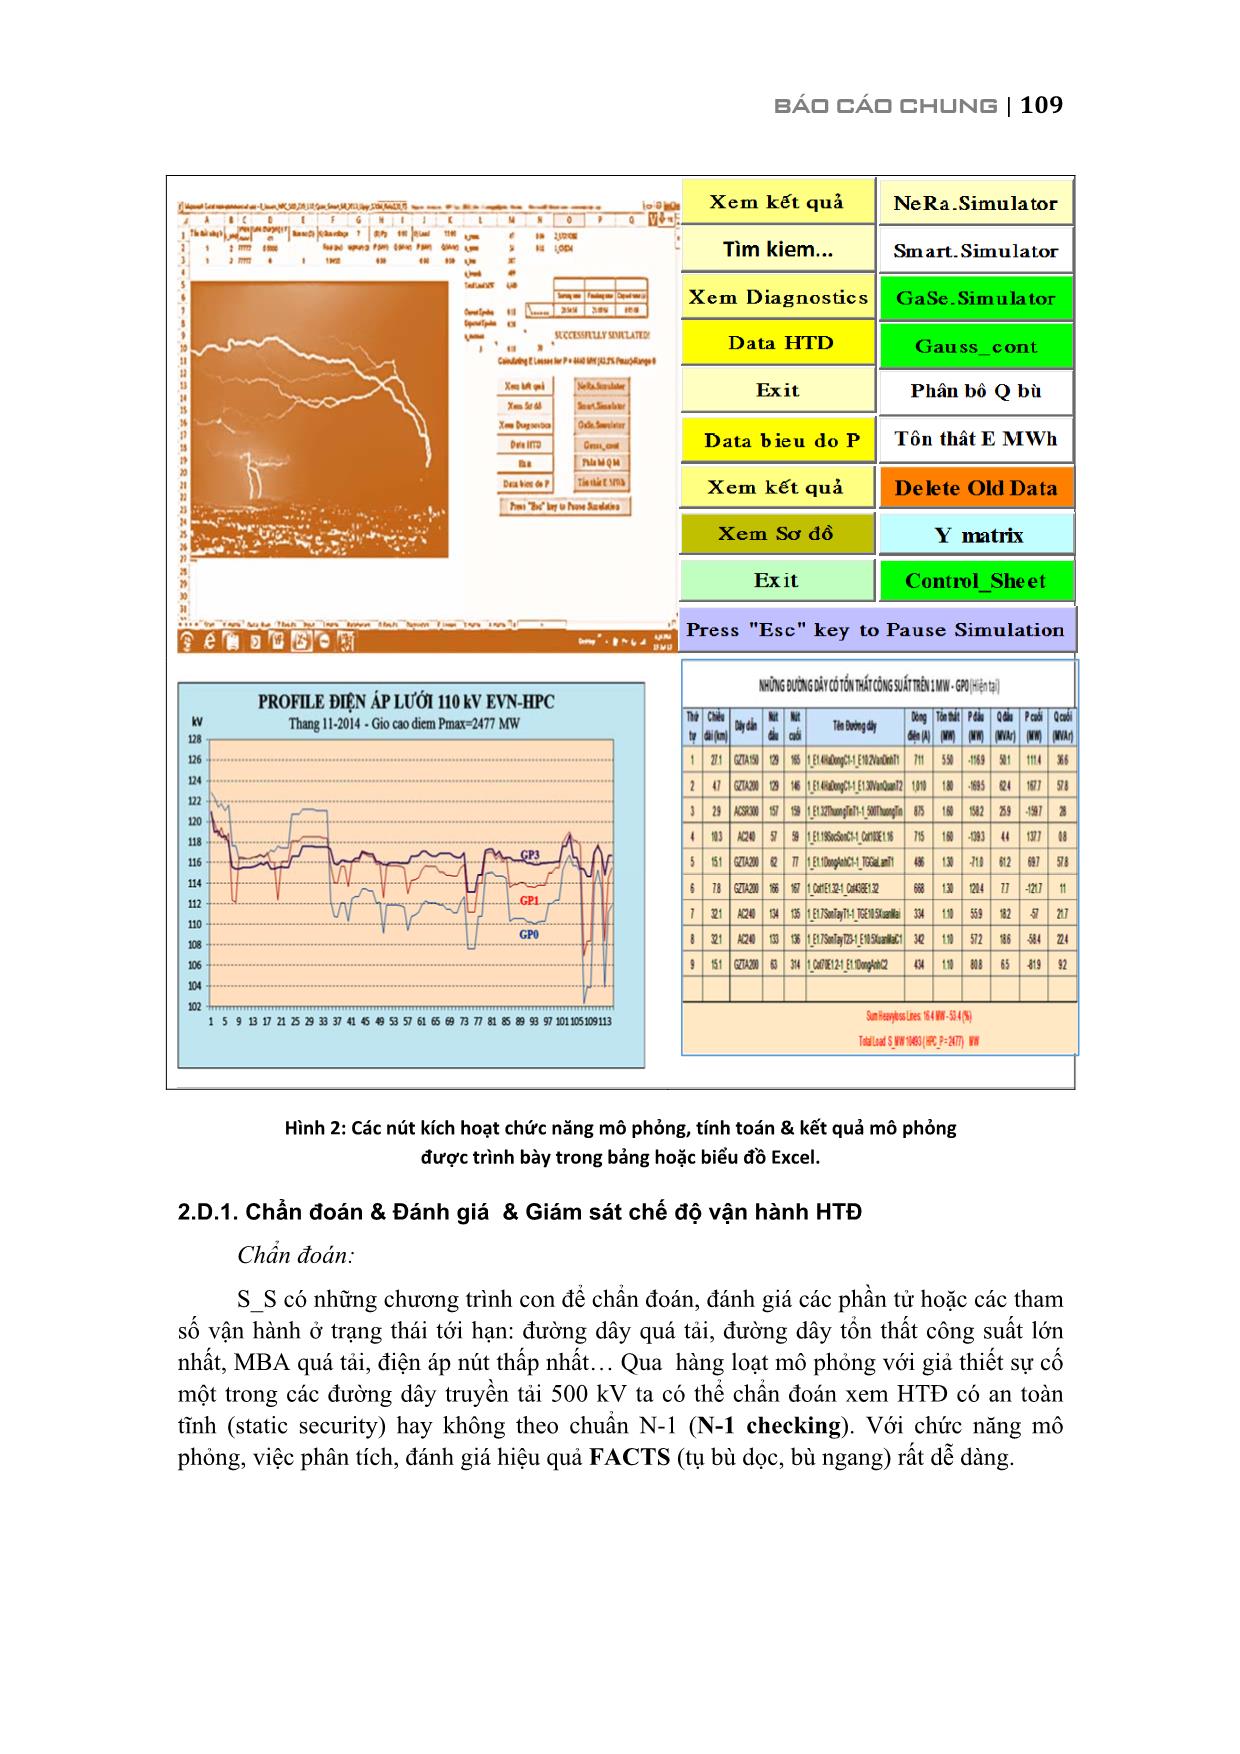 Phát triển phần mềm mô phỏng hệ thống điện smart_simulator trang 10